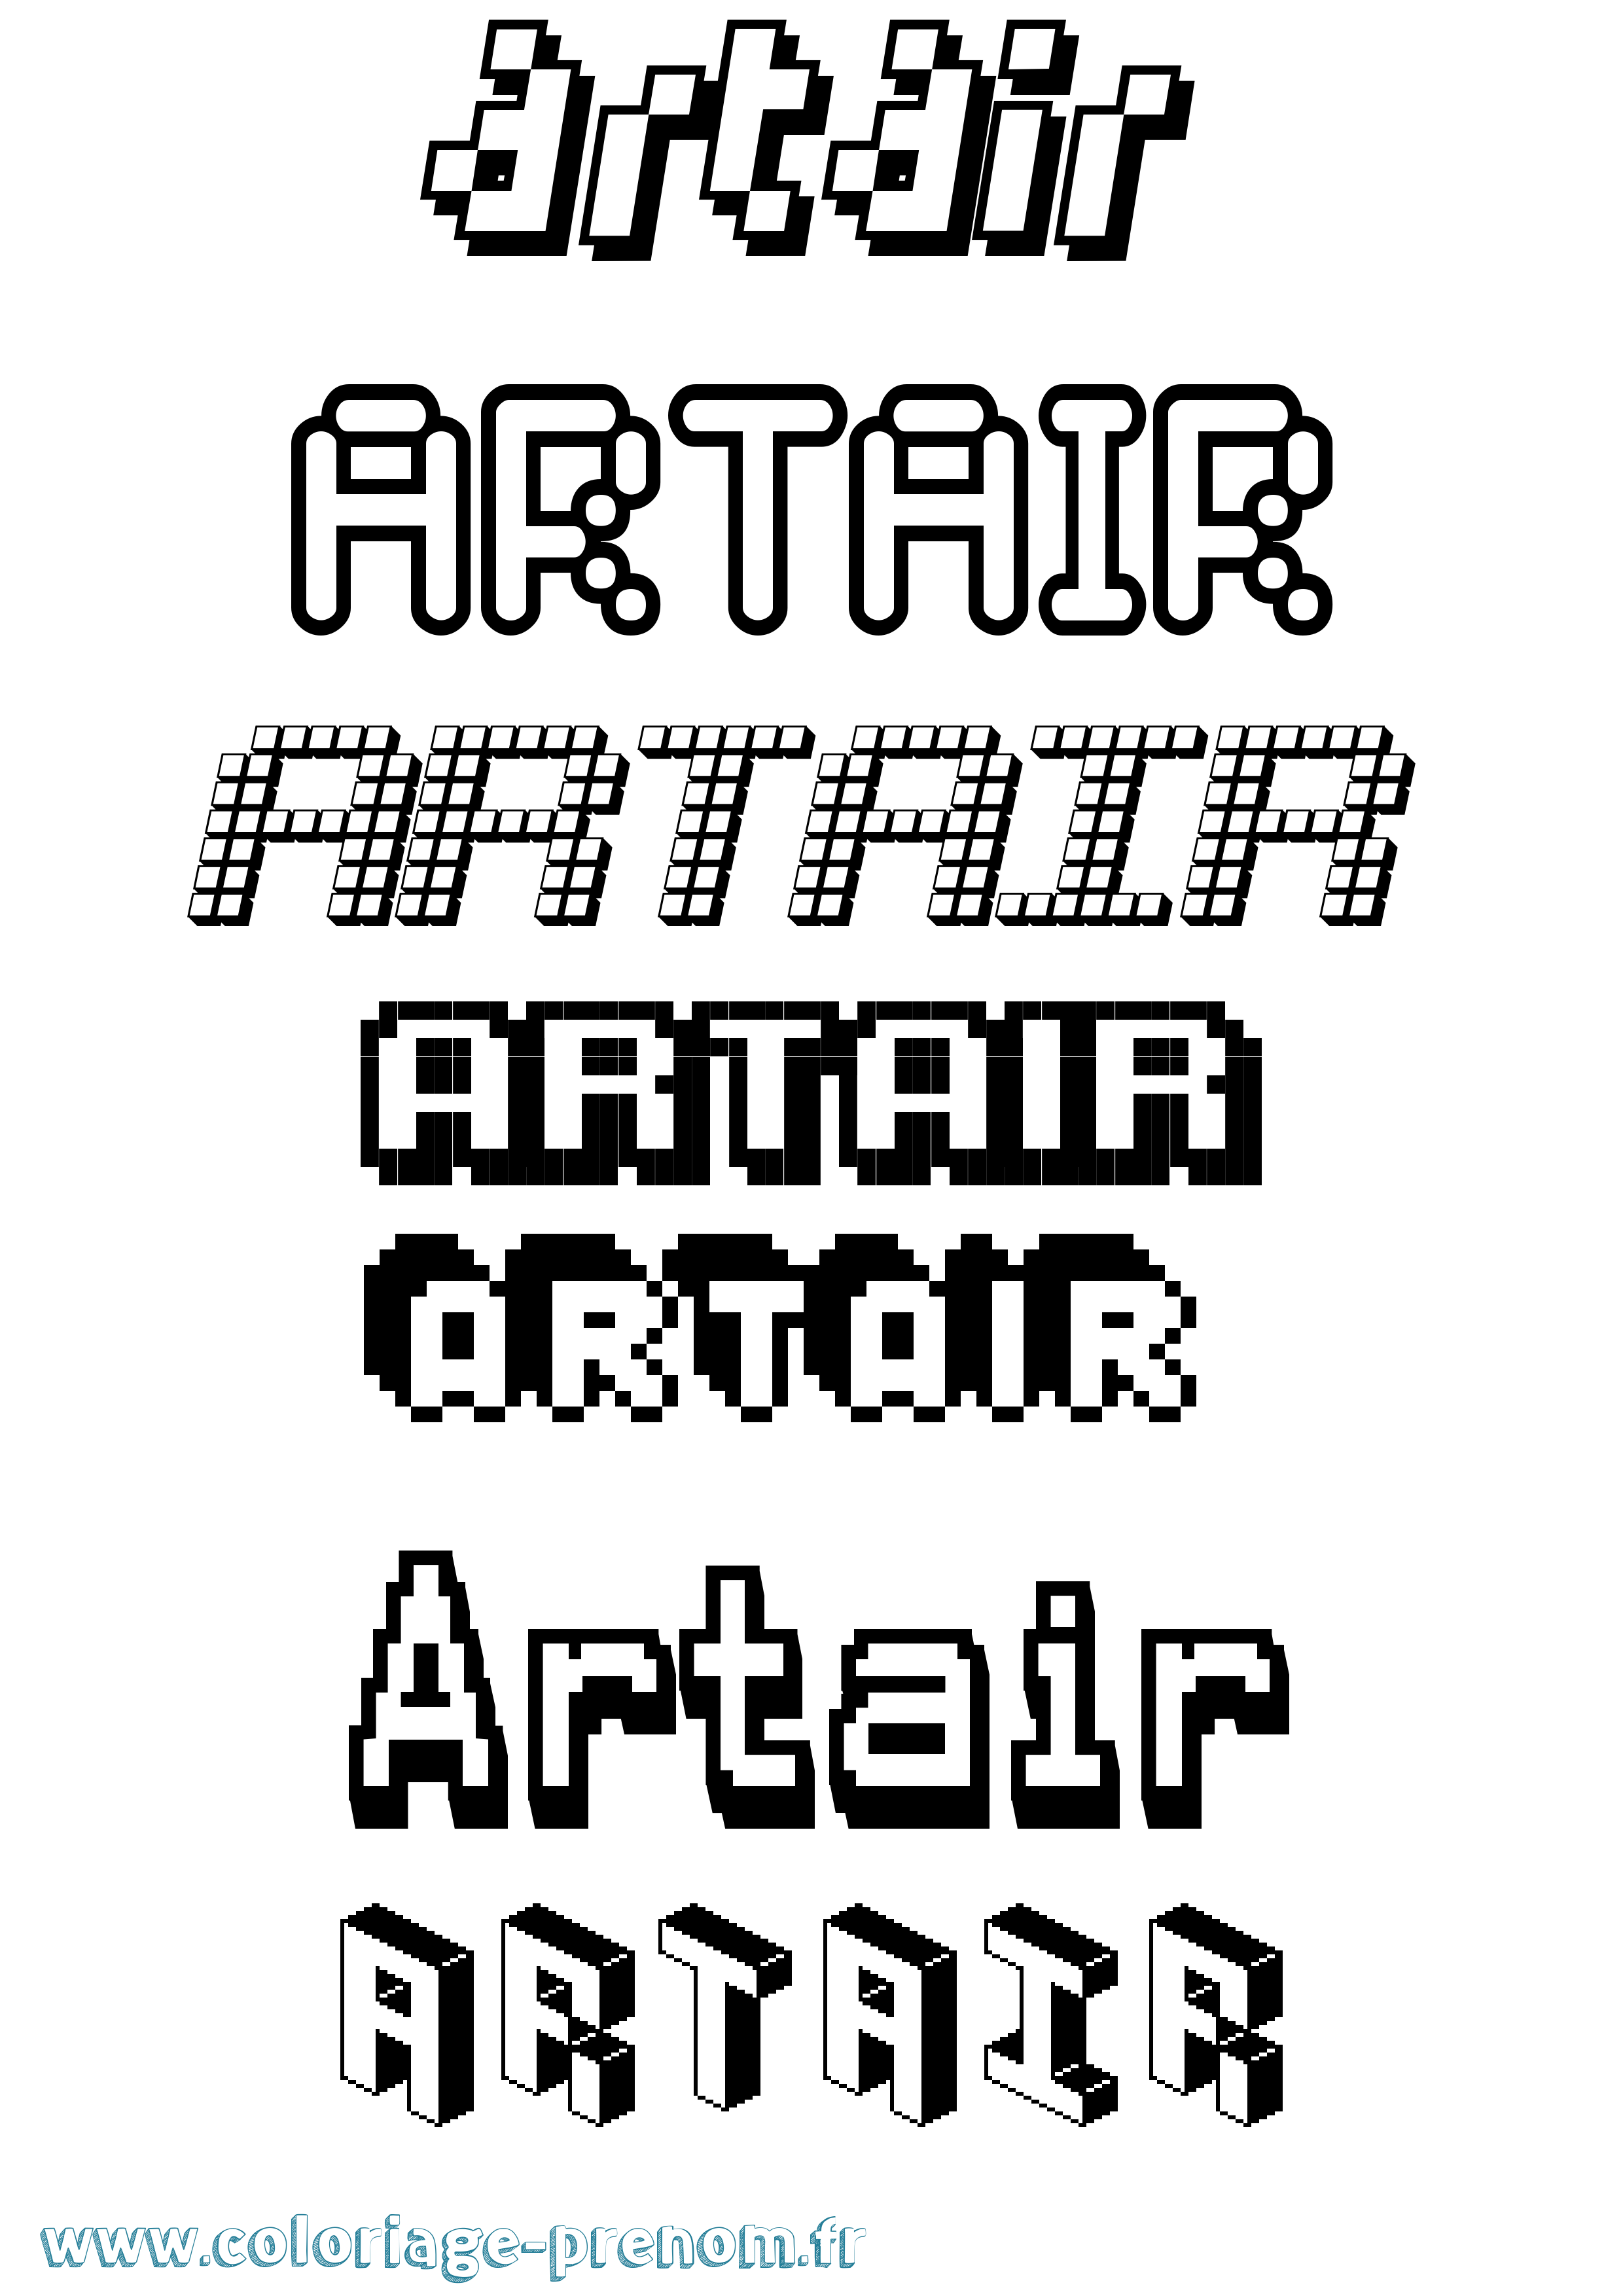 Coloriage prénom Artair Pixel